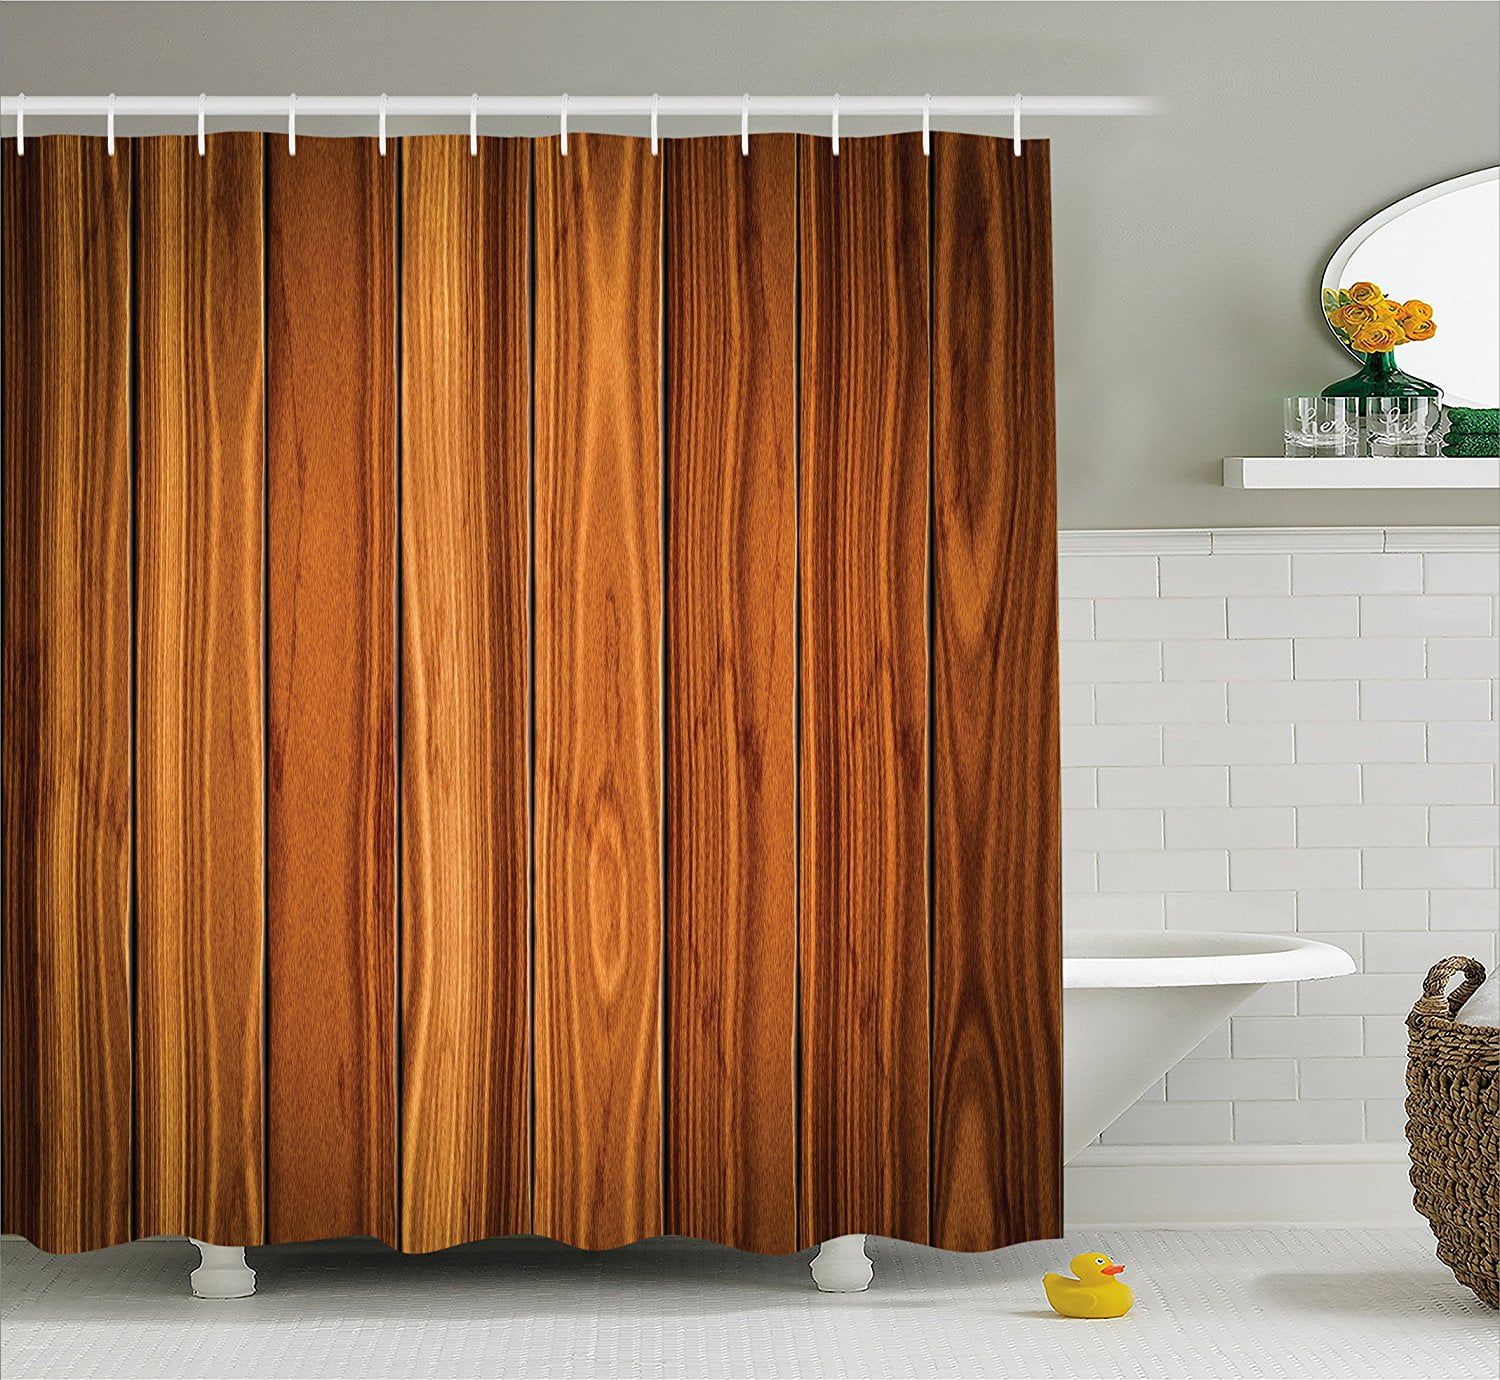 Rustic Brown Wood Board Shower Curtain Set Bathroom Waterproof Fabric Hooks 71" 